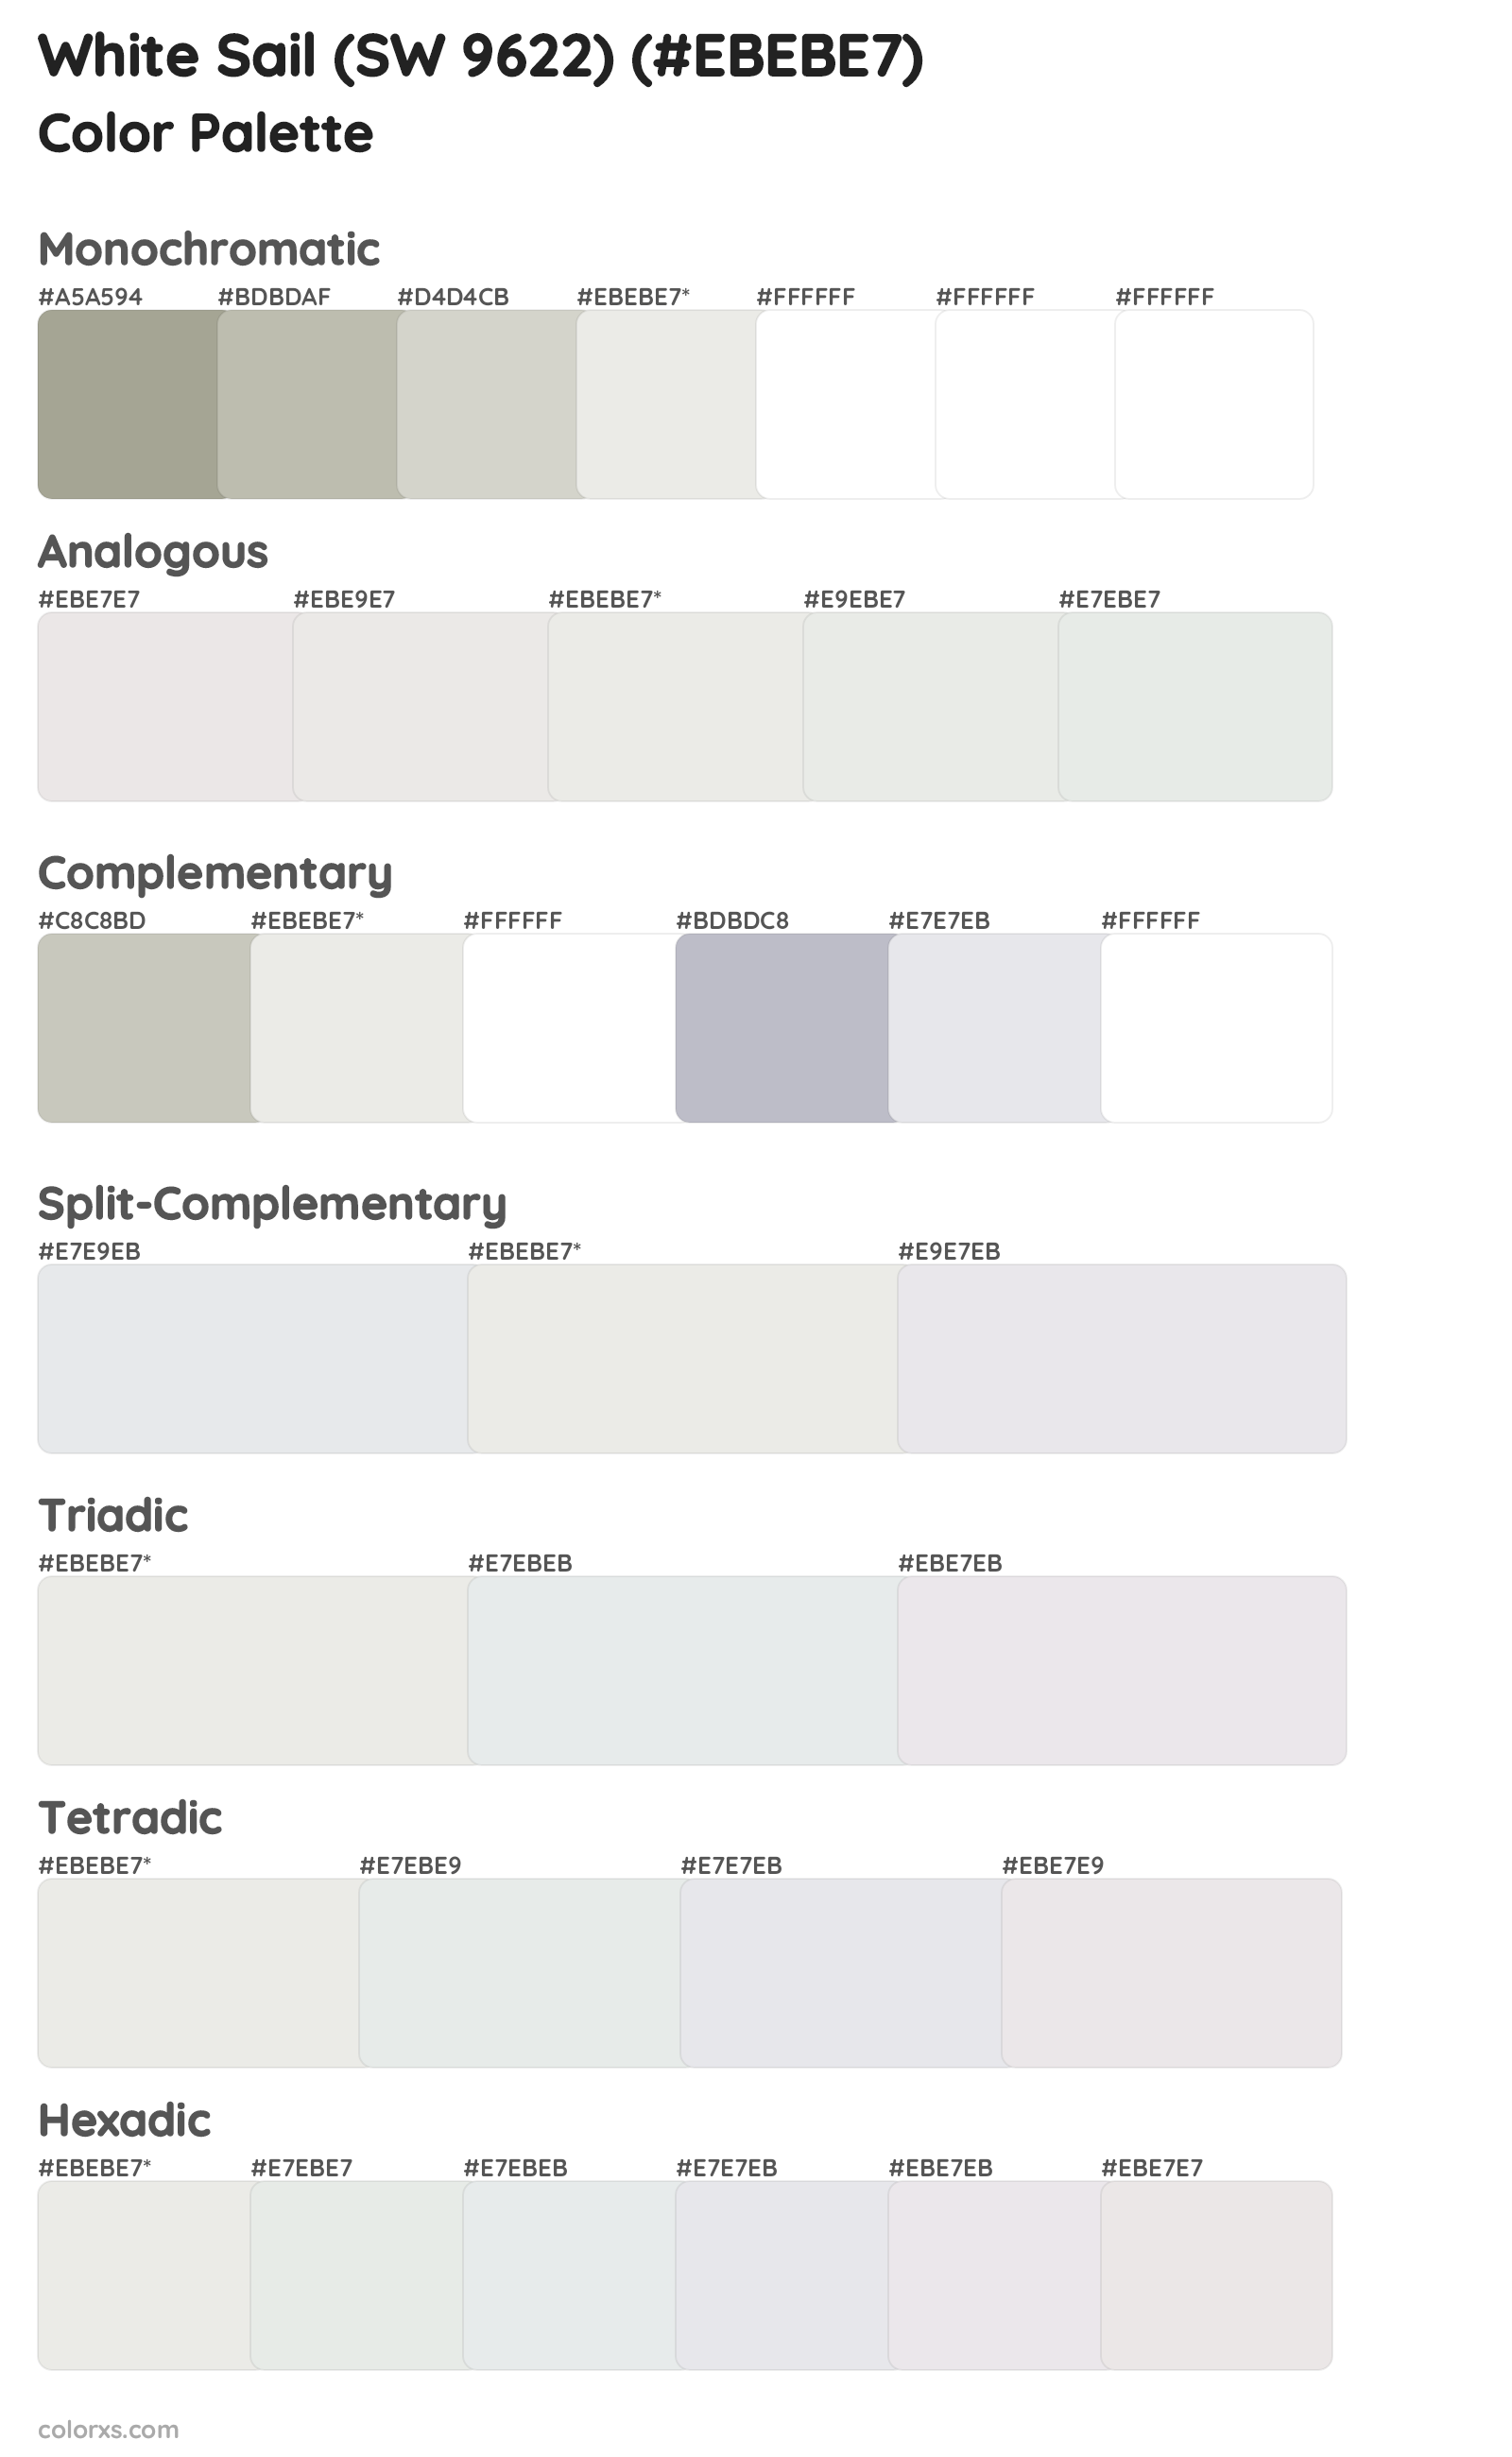 White Sail (SW 9622) Color Scheme Palettes